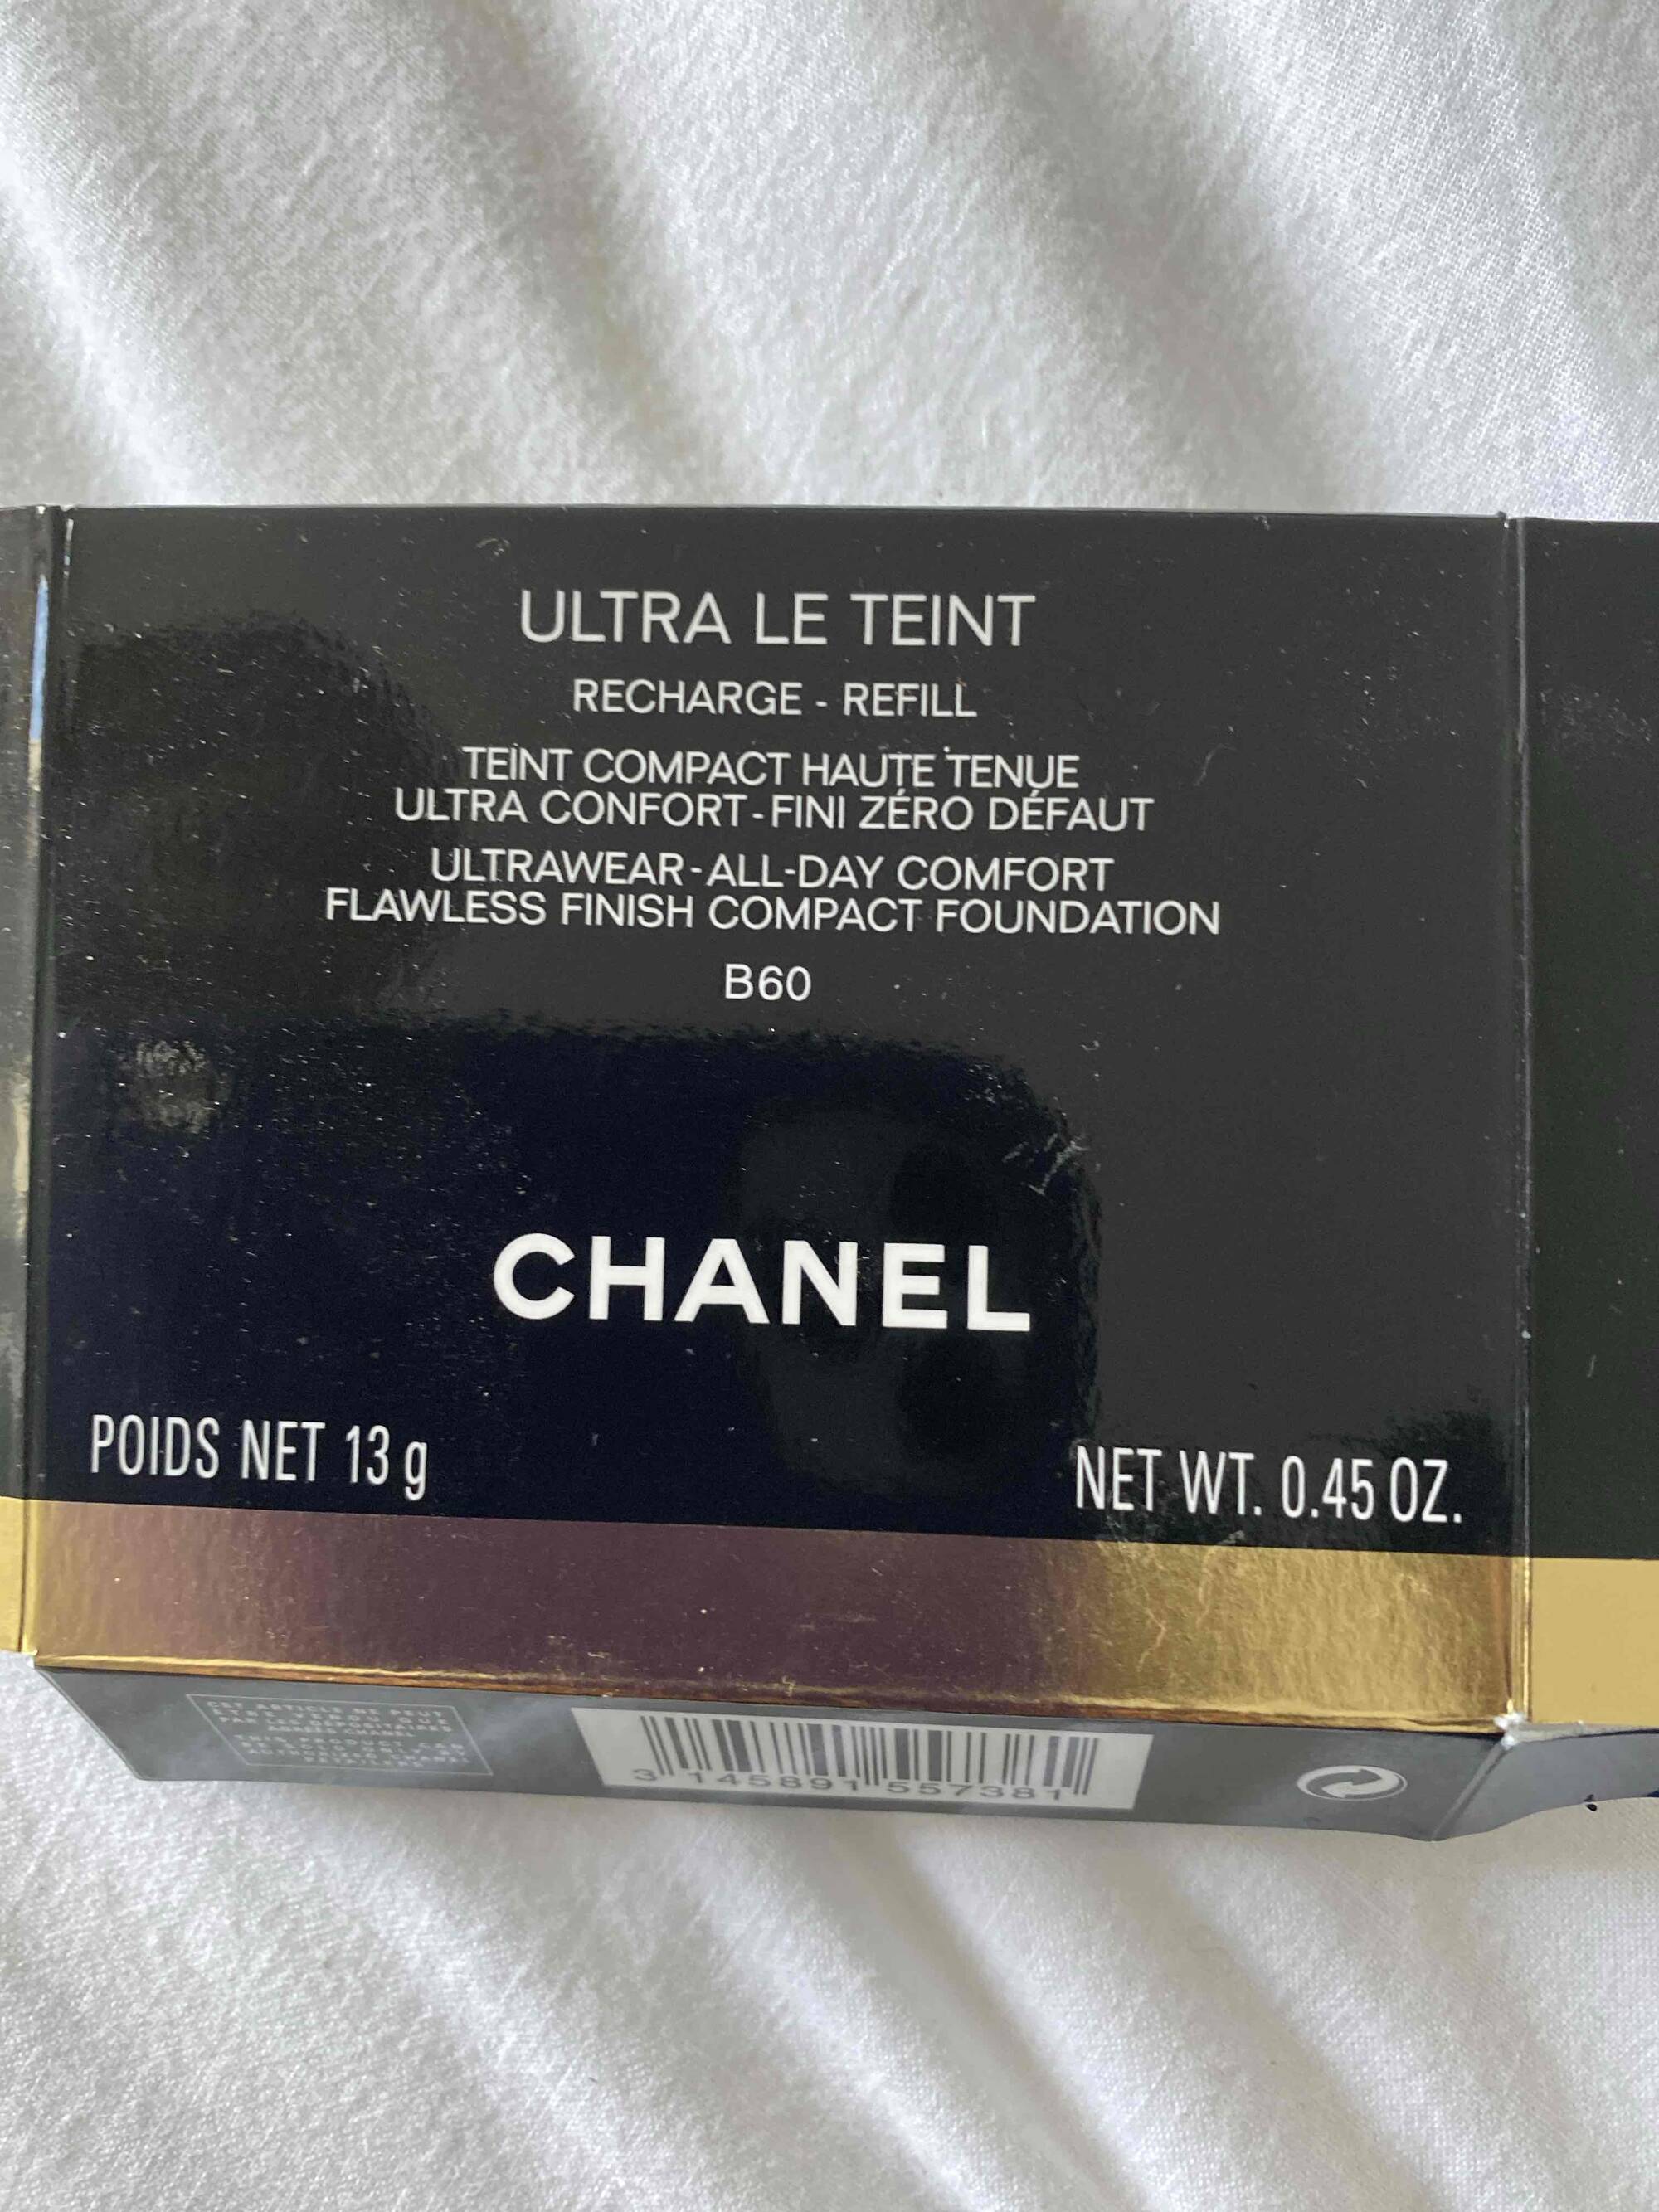 CHANEL - Ulta le teint recharge B60